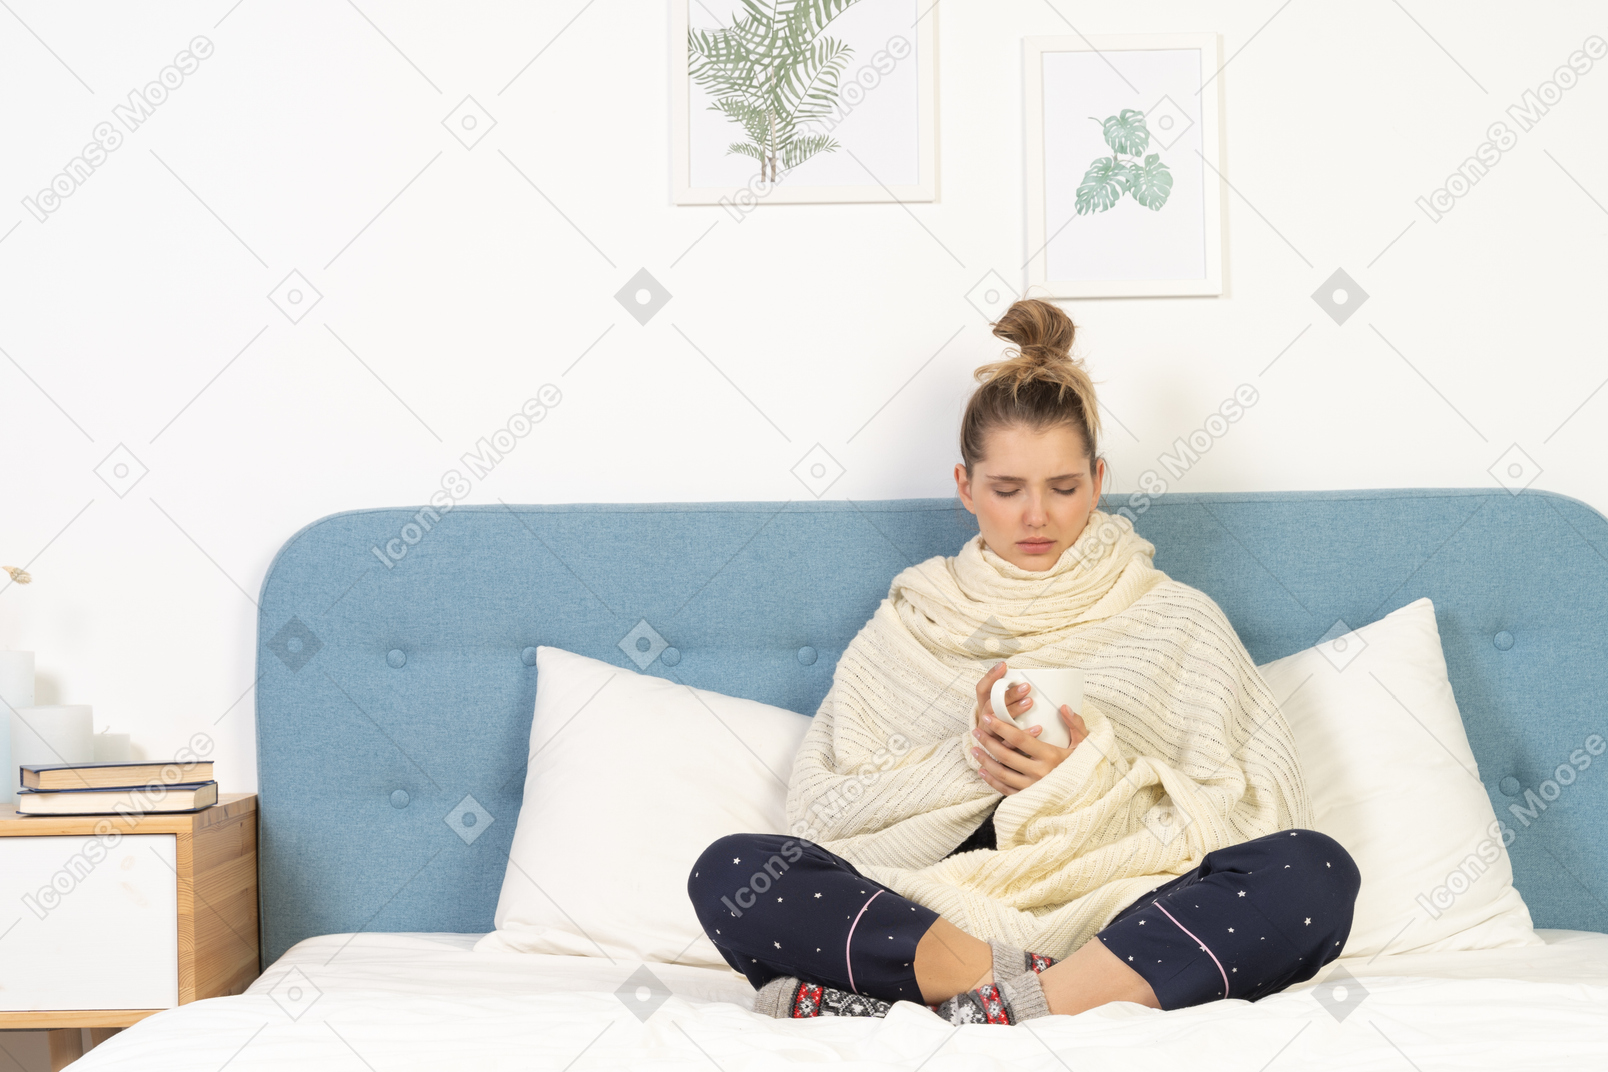 Vista frontal de una joven enferma envuelta en una manta blanca en la cama